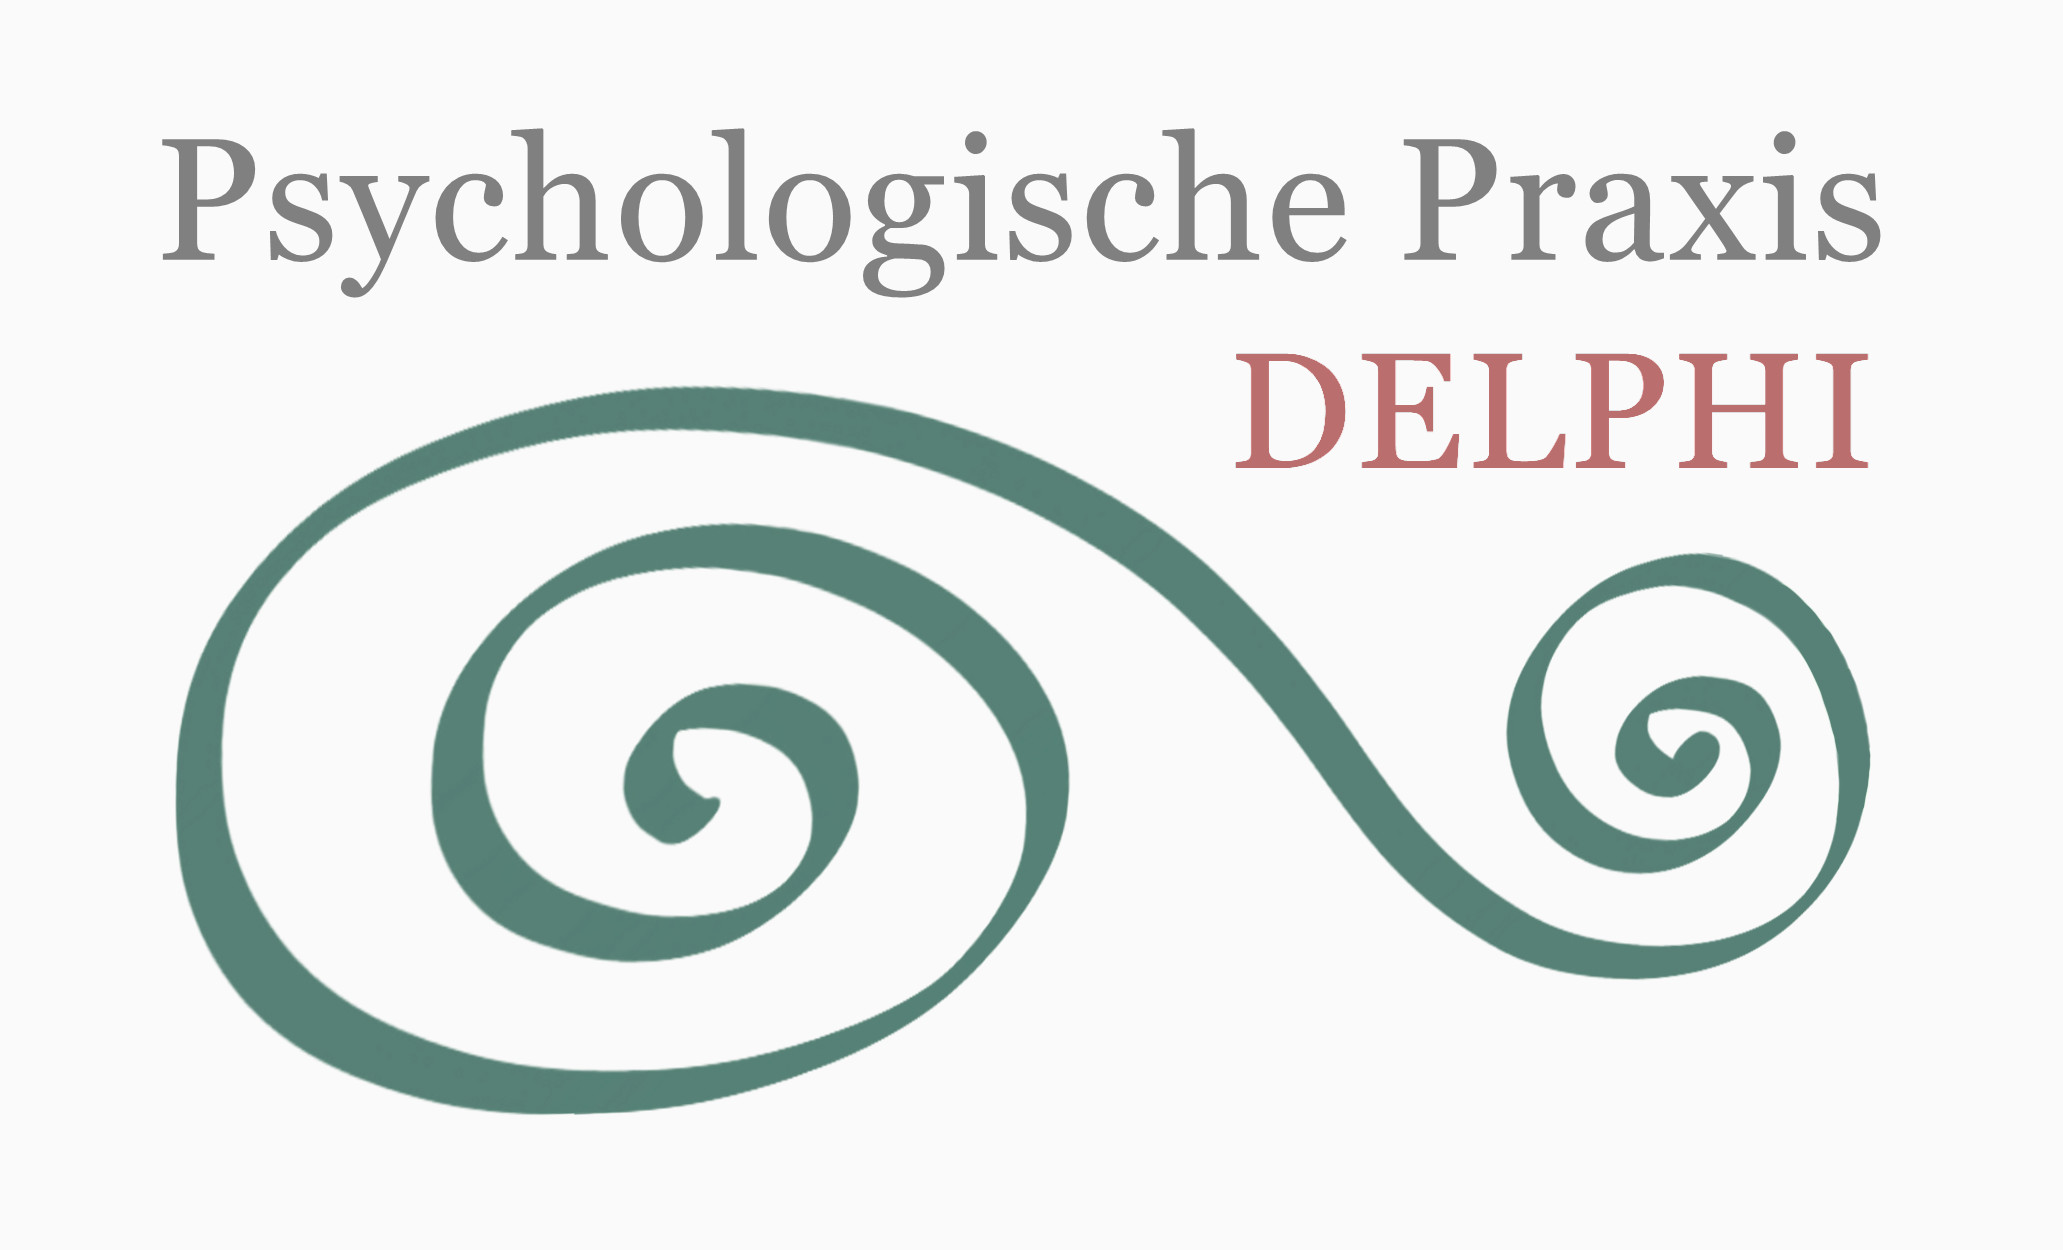 Psychologische Praxis DELPHI